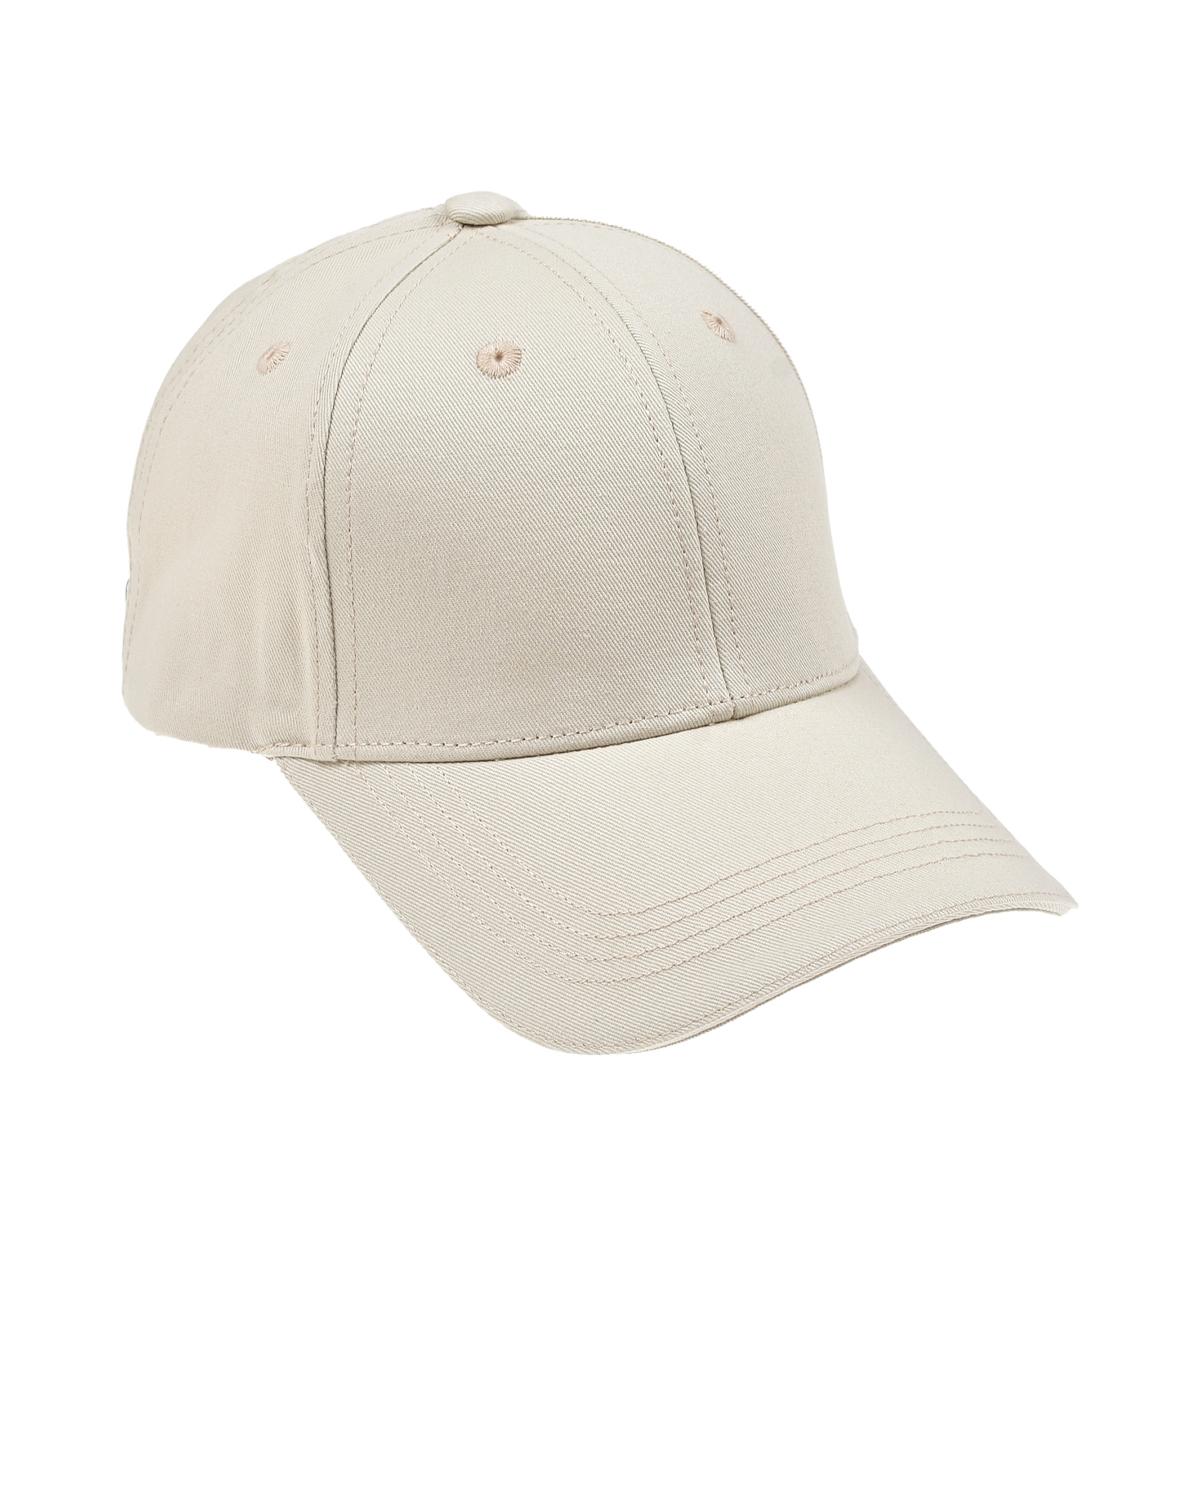 Базовая кепка кремового цвета Jan&Sofie, размер unica - фото 1